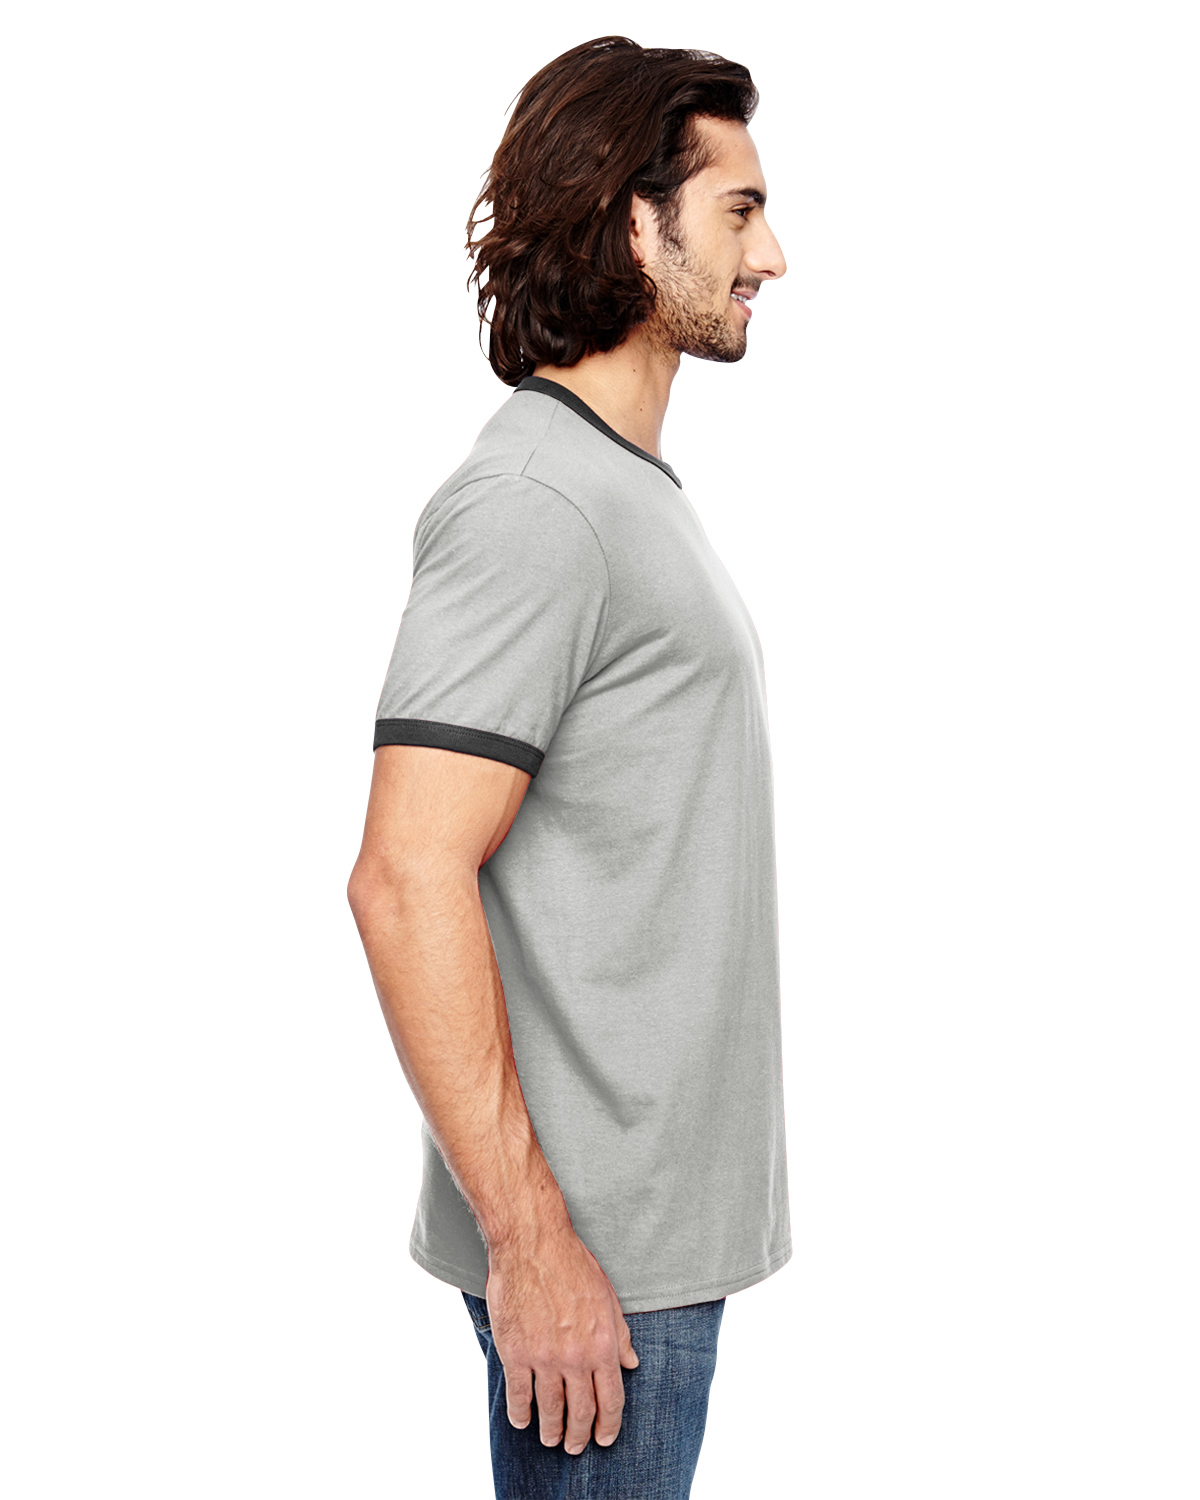 NEW Anvil Men's Light weight 100% Cotton Ringer T-Shirt M-988AN 